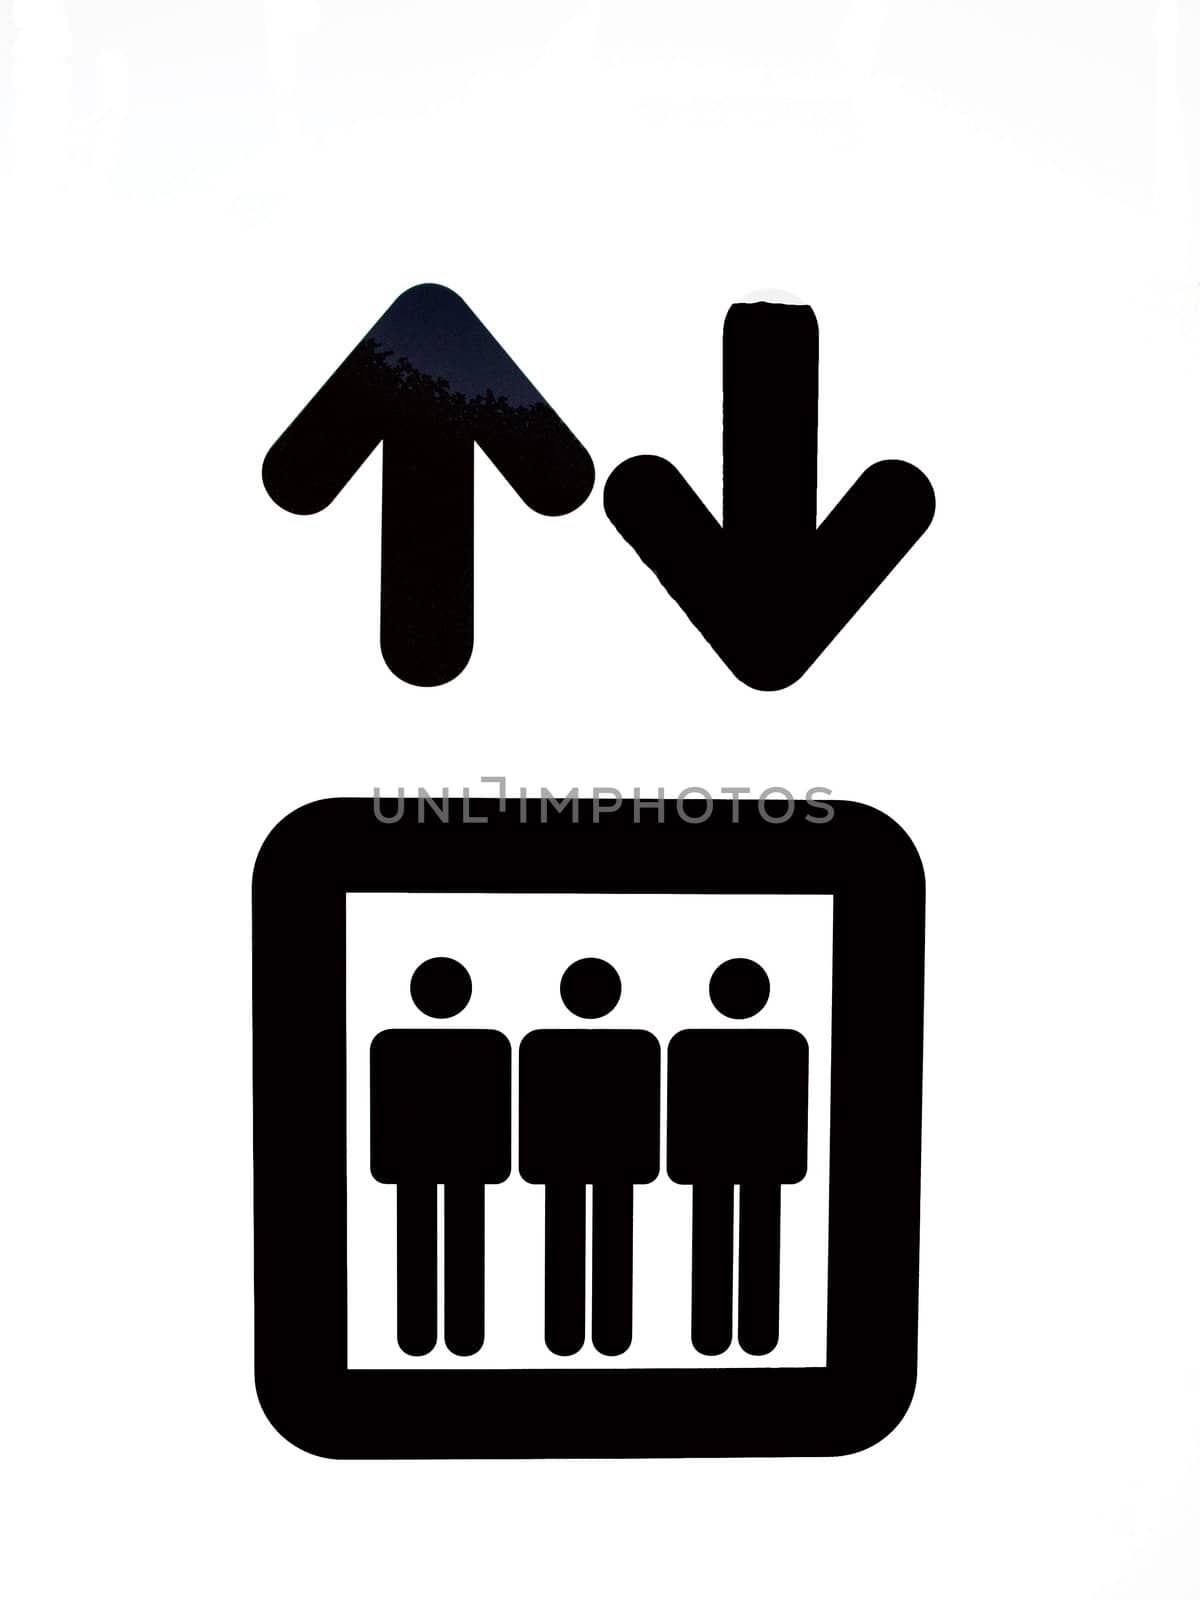 Graphic sign of a lift elevator door